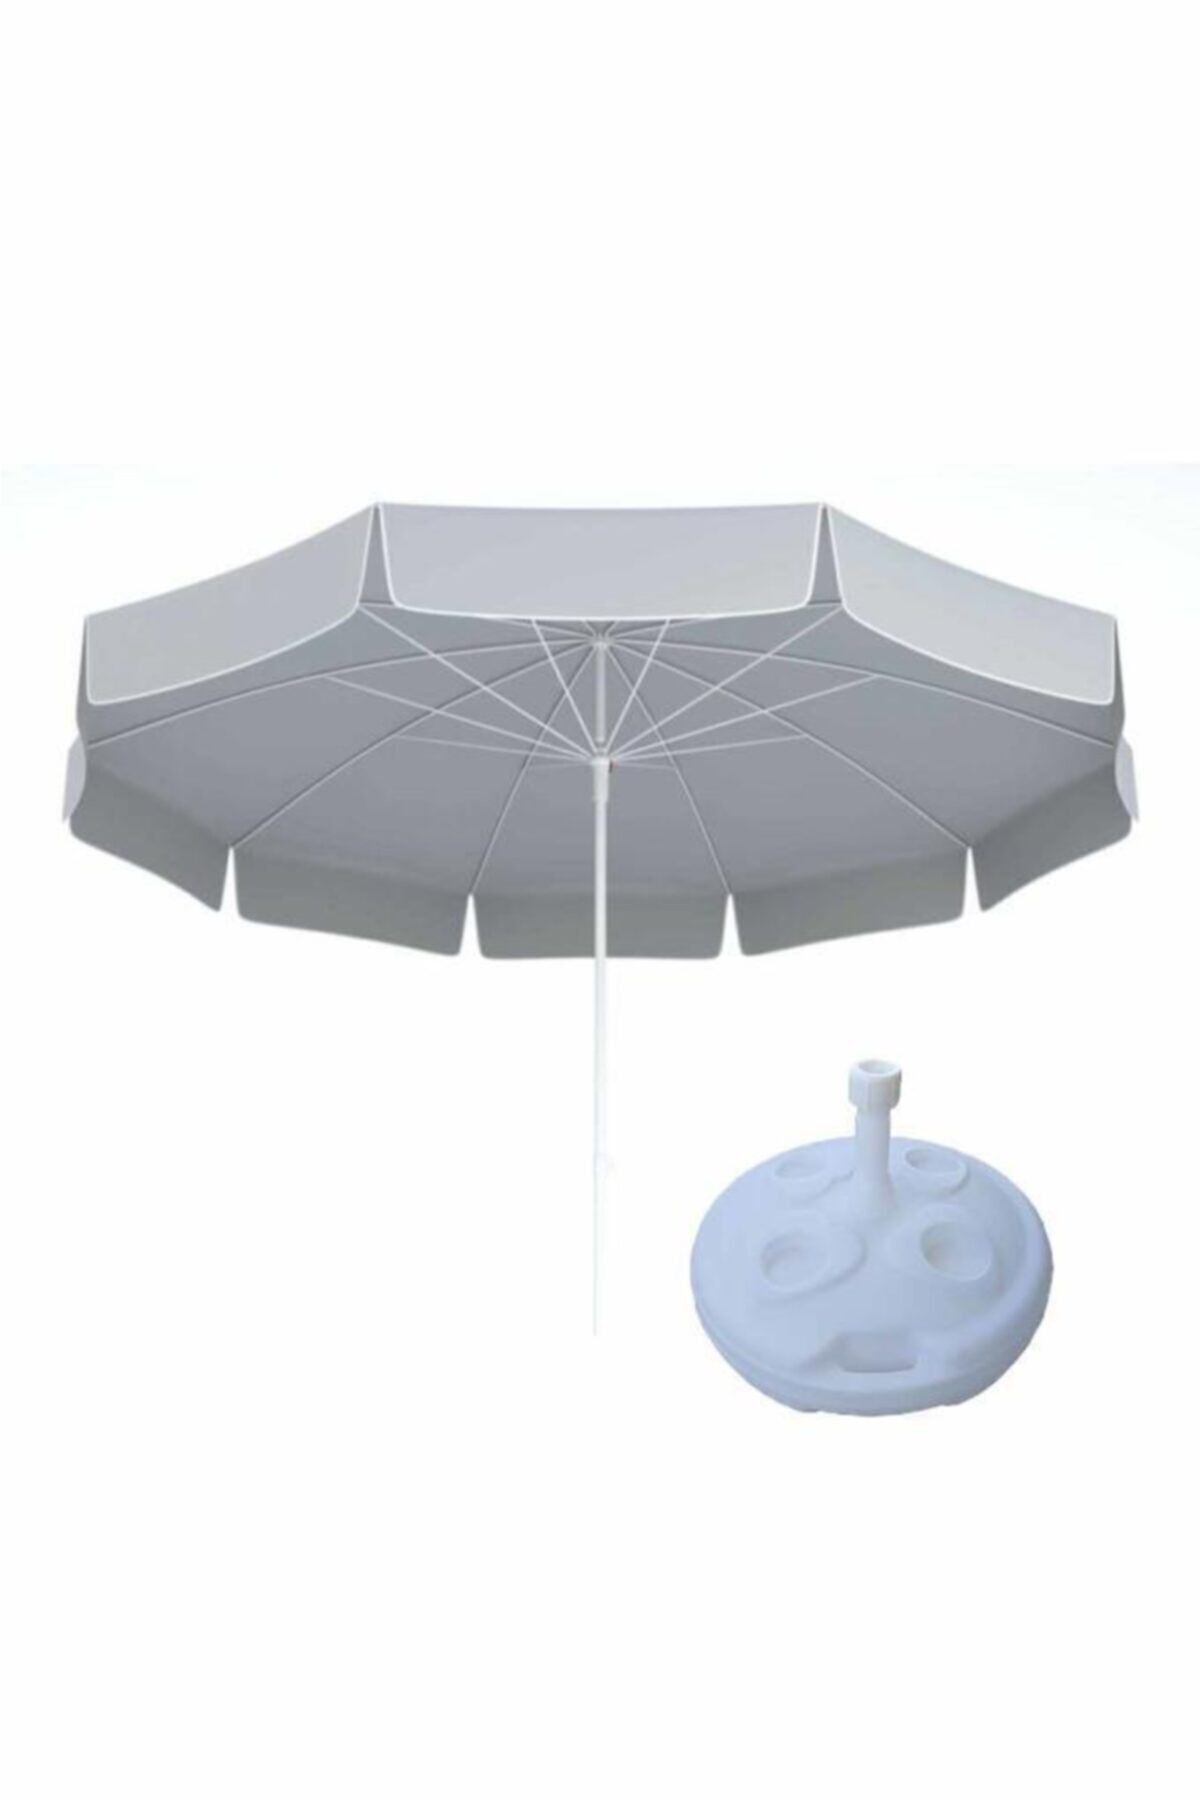 SUME 10 Telli Plaj Balkon Bahçe Şemsiyesi Eğilebilir 200 Cm Çap Bidon Dahil